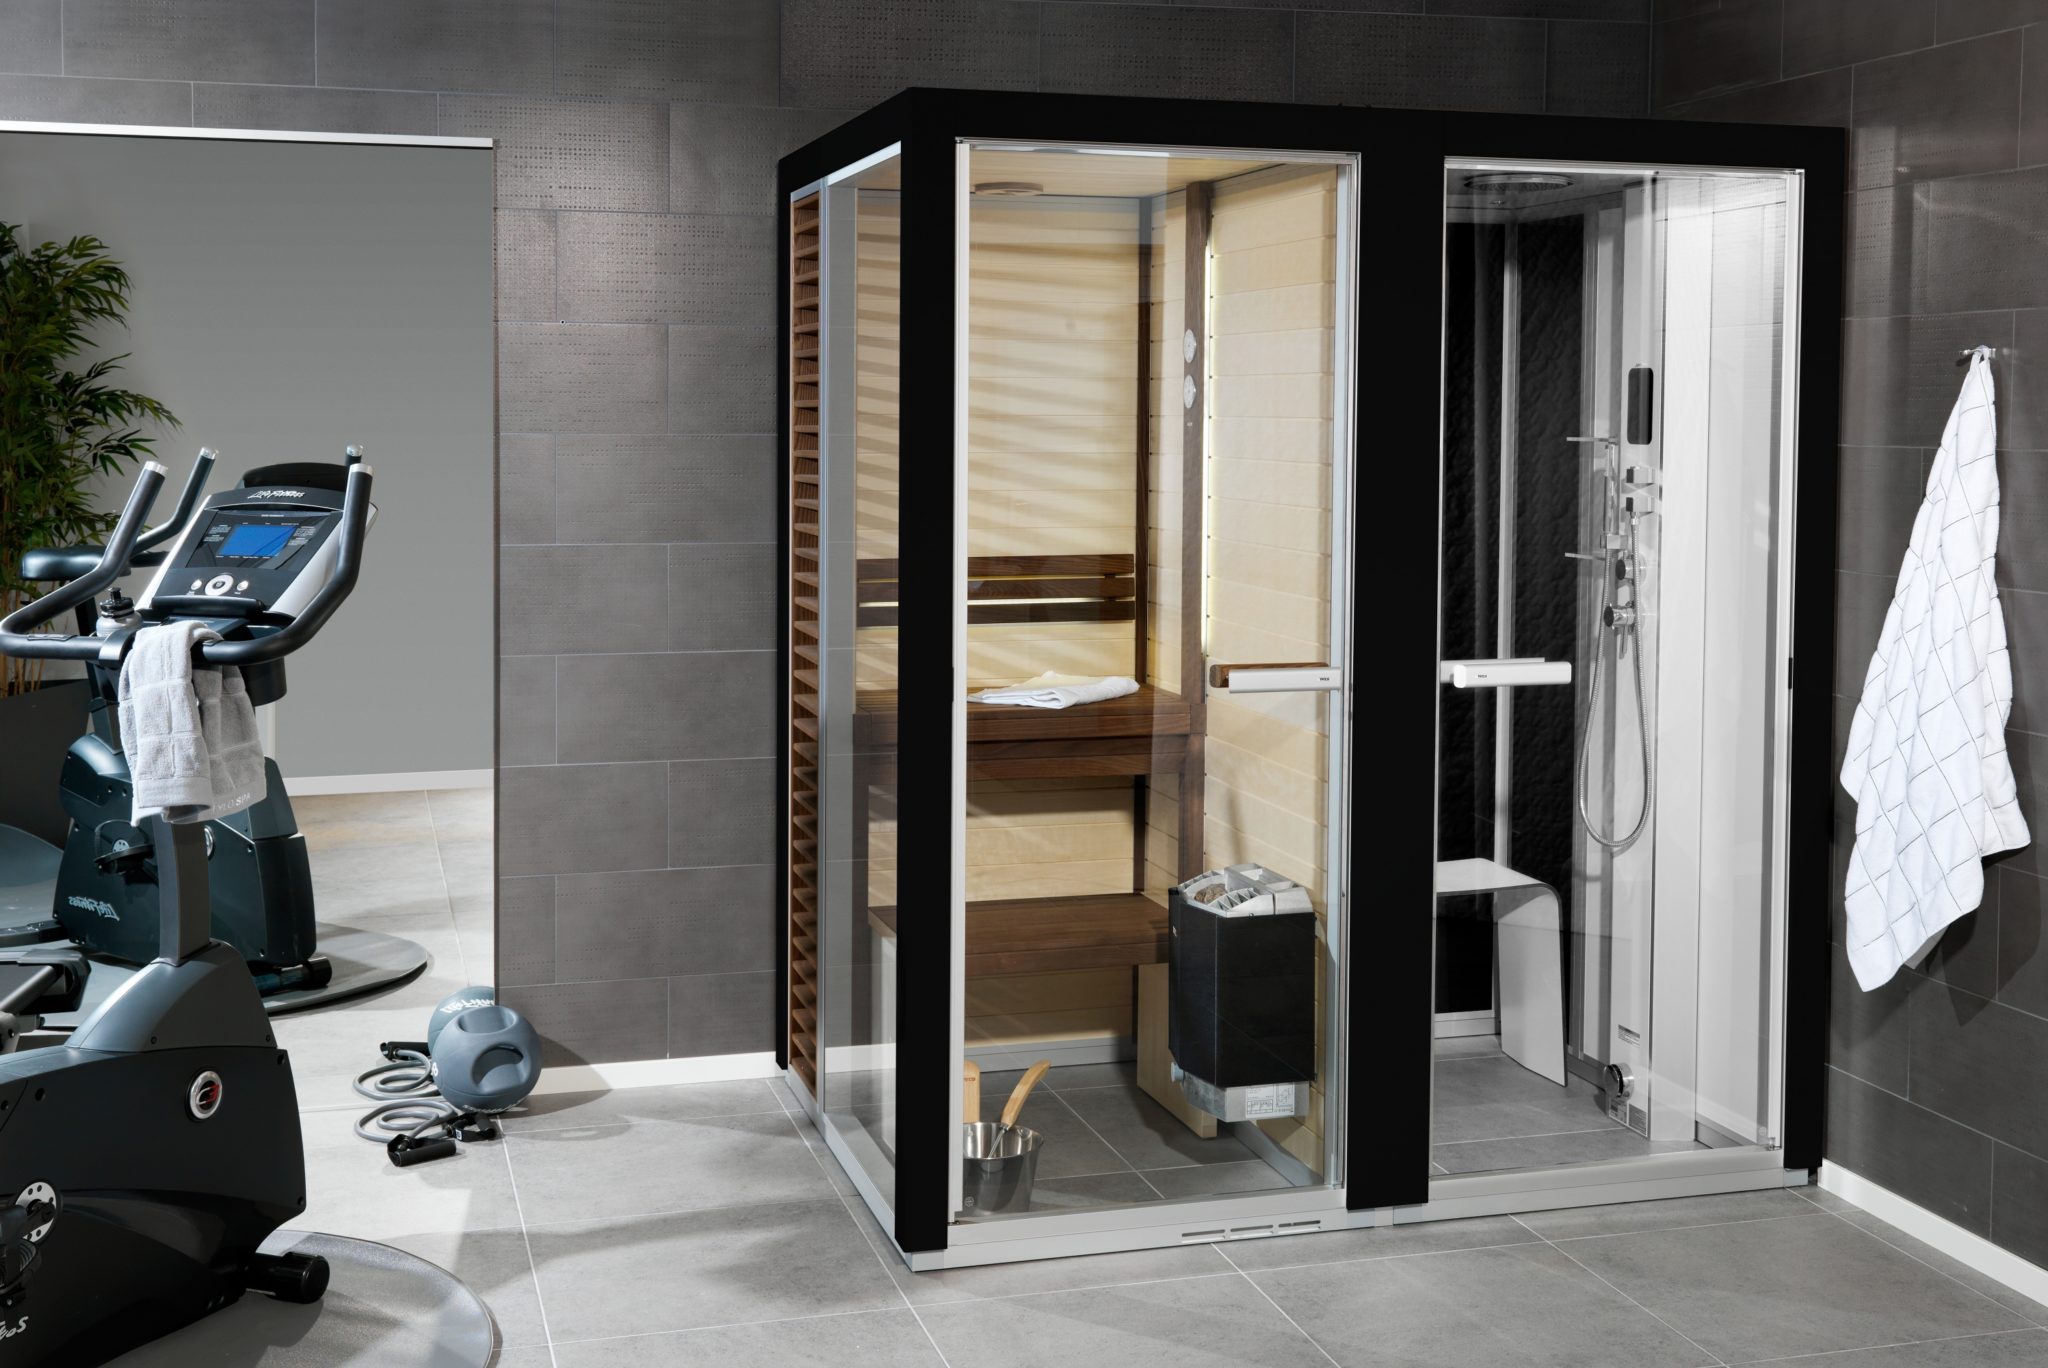 Gedetailleerd kosten sigaar Impression Twin sauna en stoomdouche kopen & prijs - TyloHelo